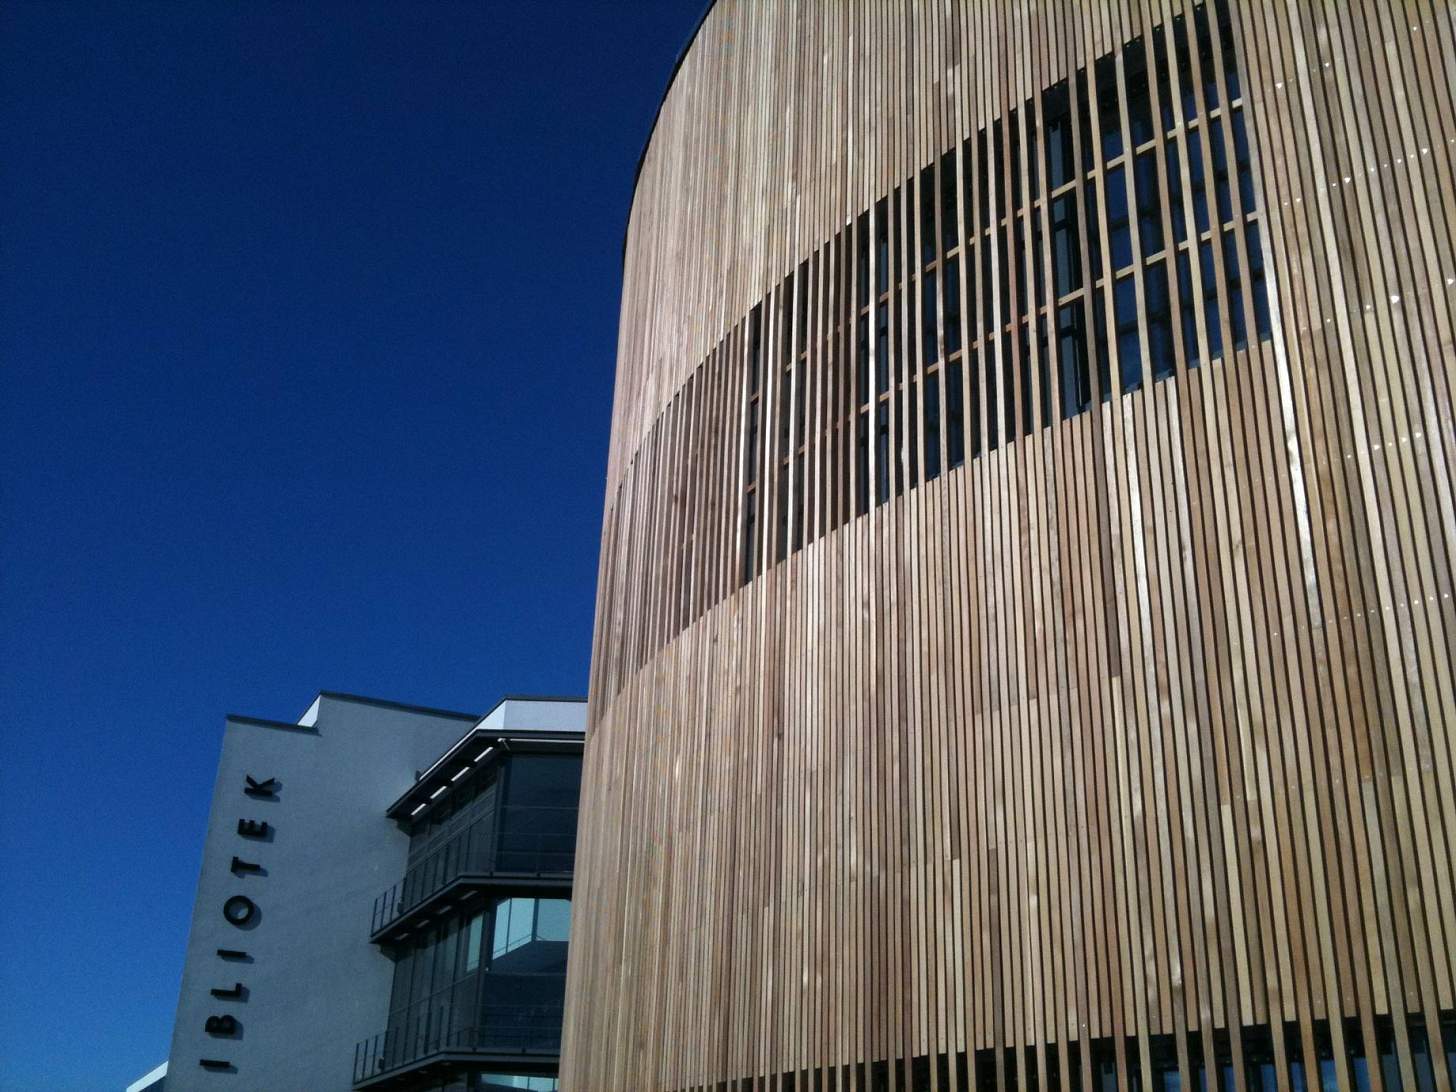 2010-Fasad med ribbor av cederträ. Fungerar som solavskärmning.